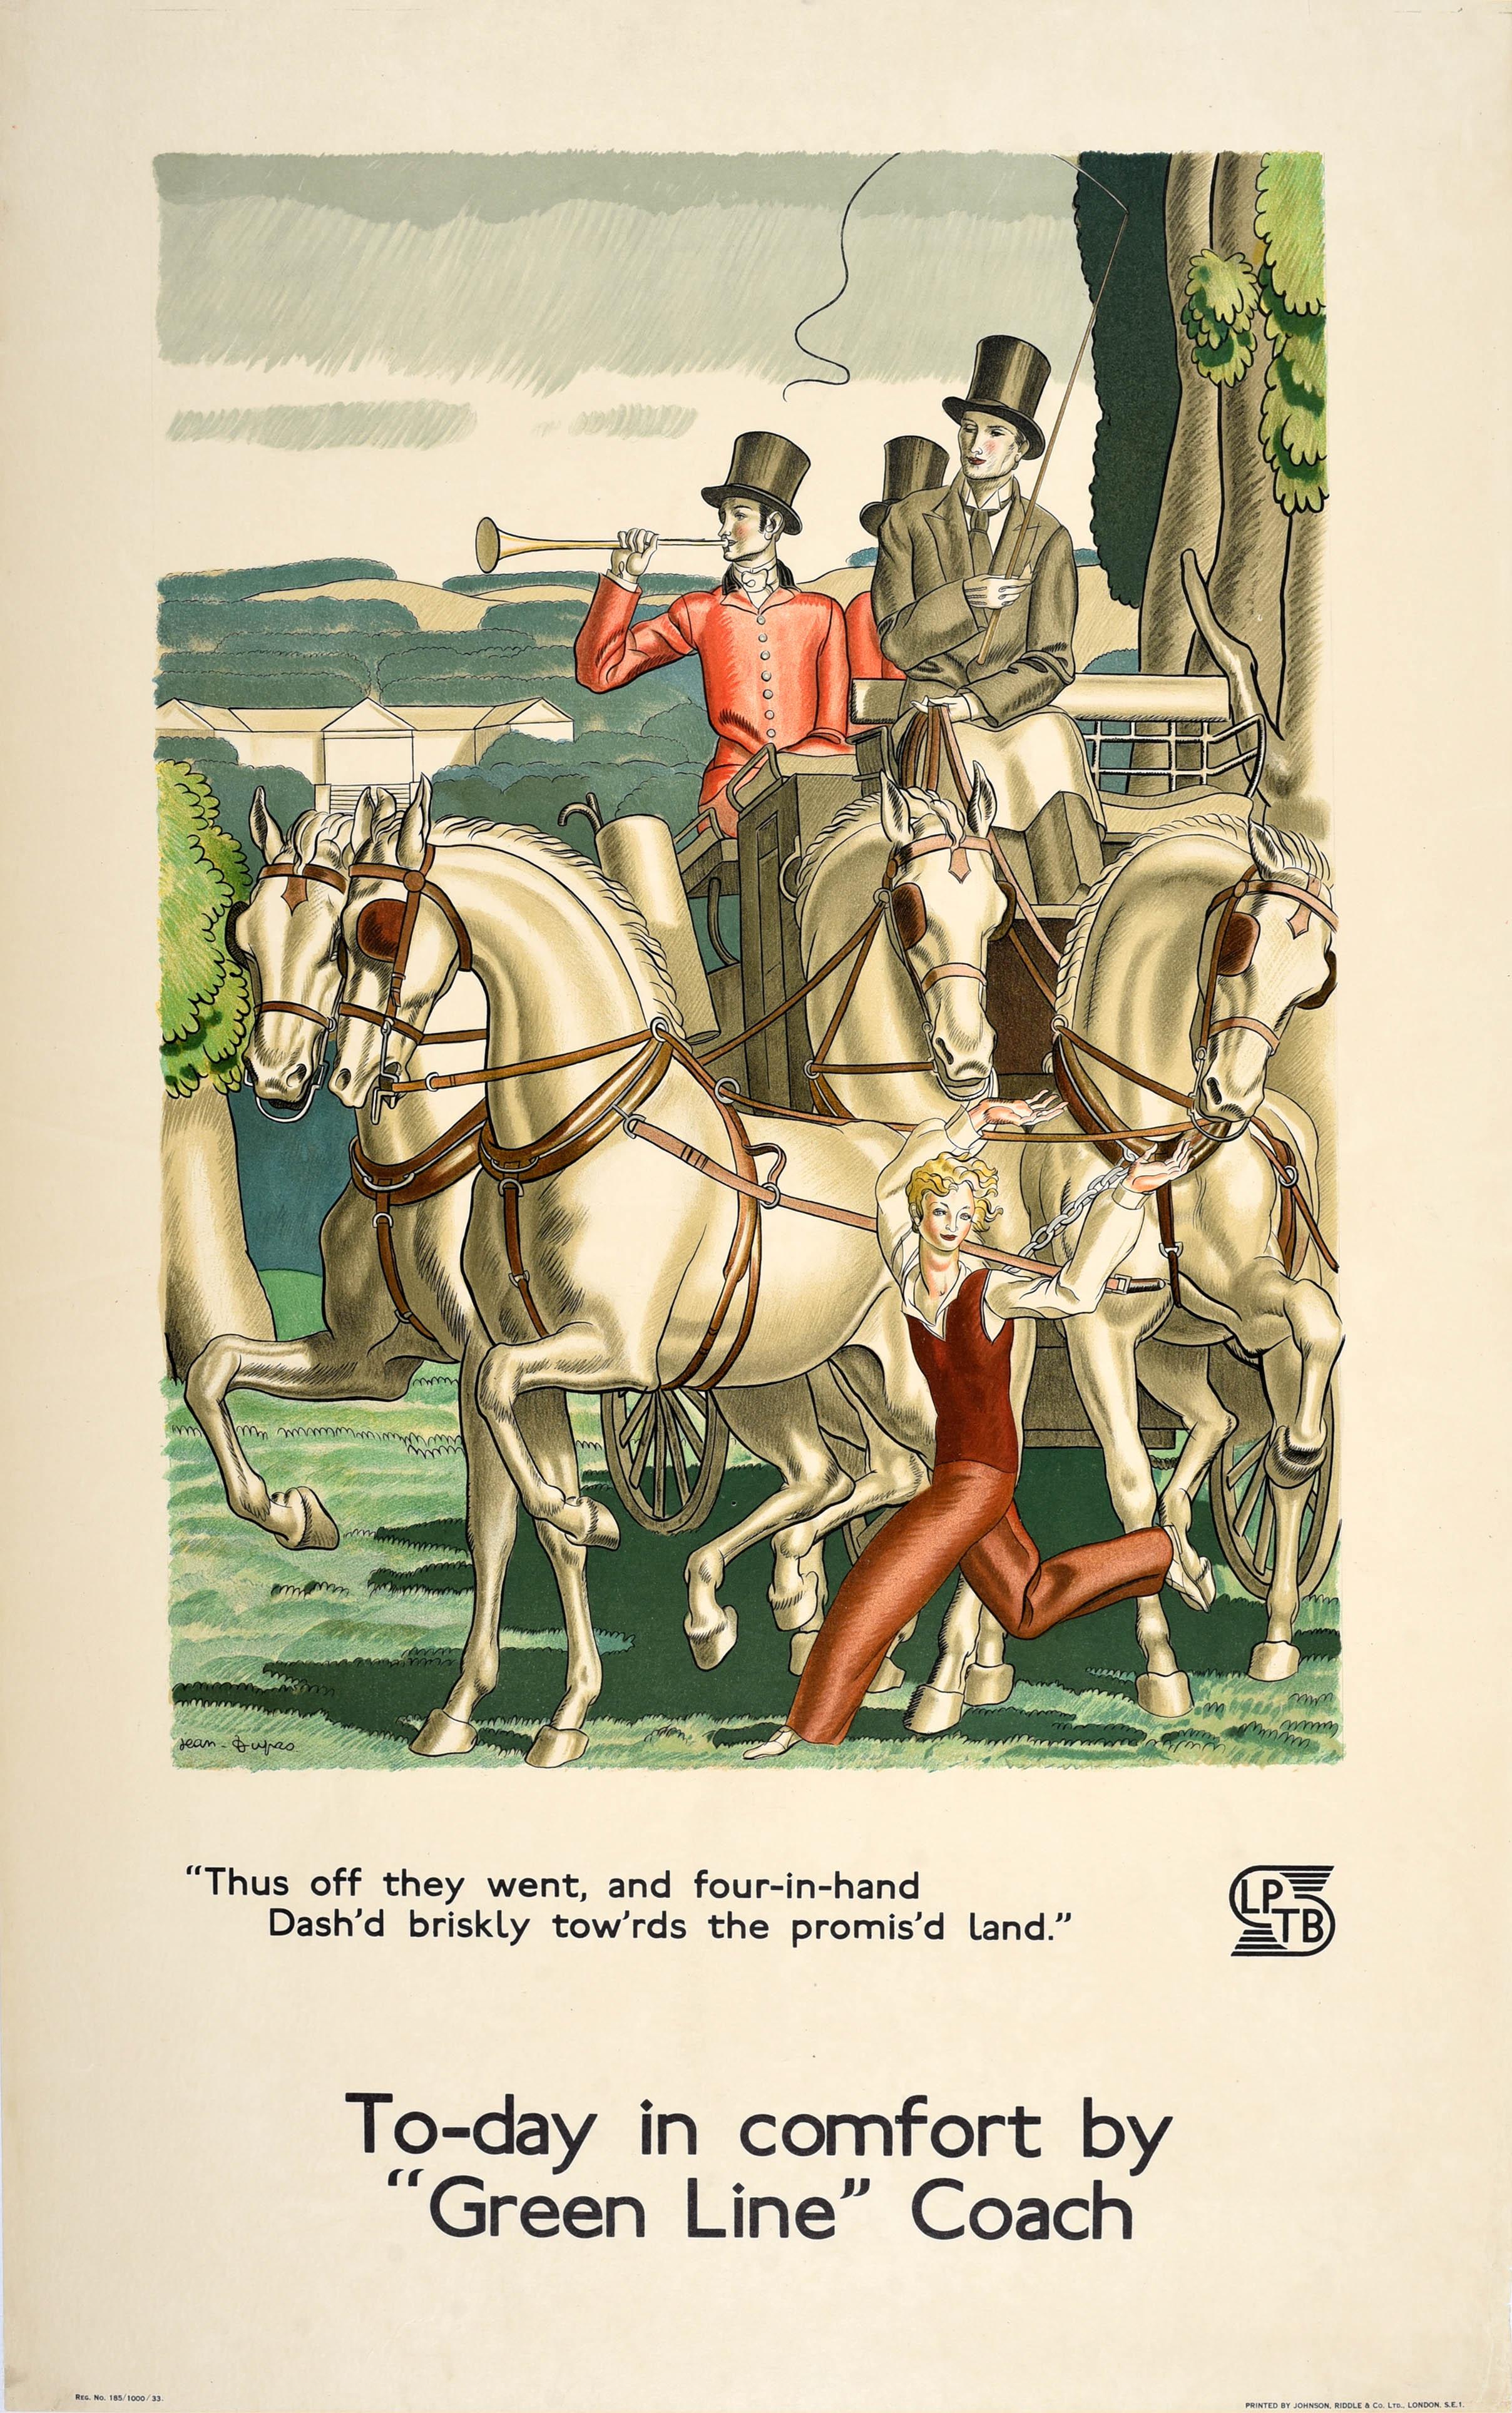 Affiche originale d'époque des transports londoniens promouvant les voyages en autocars de la ligne verte, avec une superbe illustration du célèbre designer français de l'Art déco Jean Dupas (1882-1964) représentant des hommes en costumes élégants